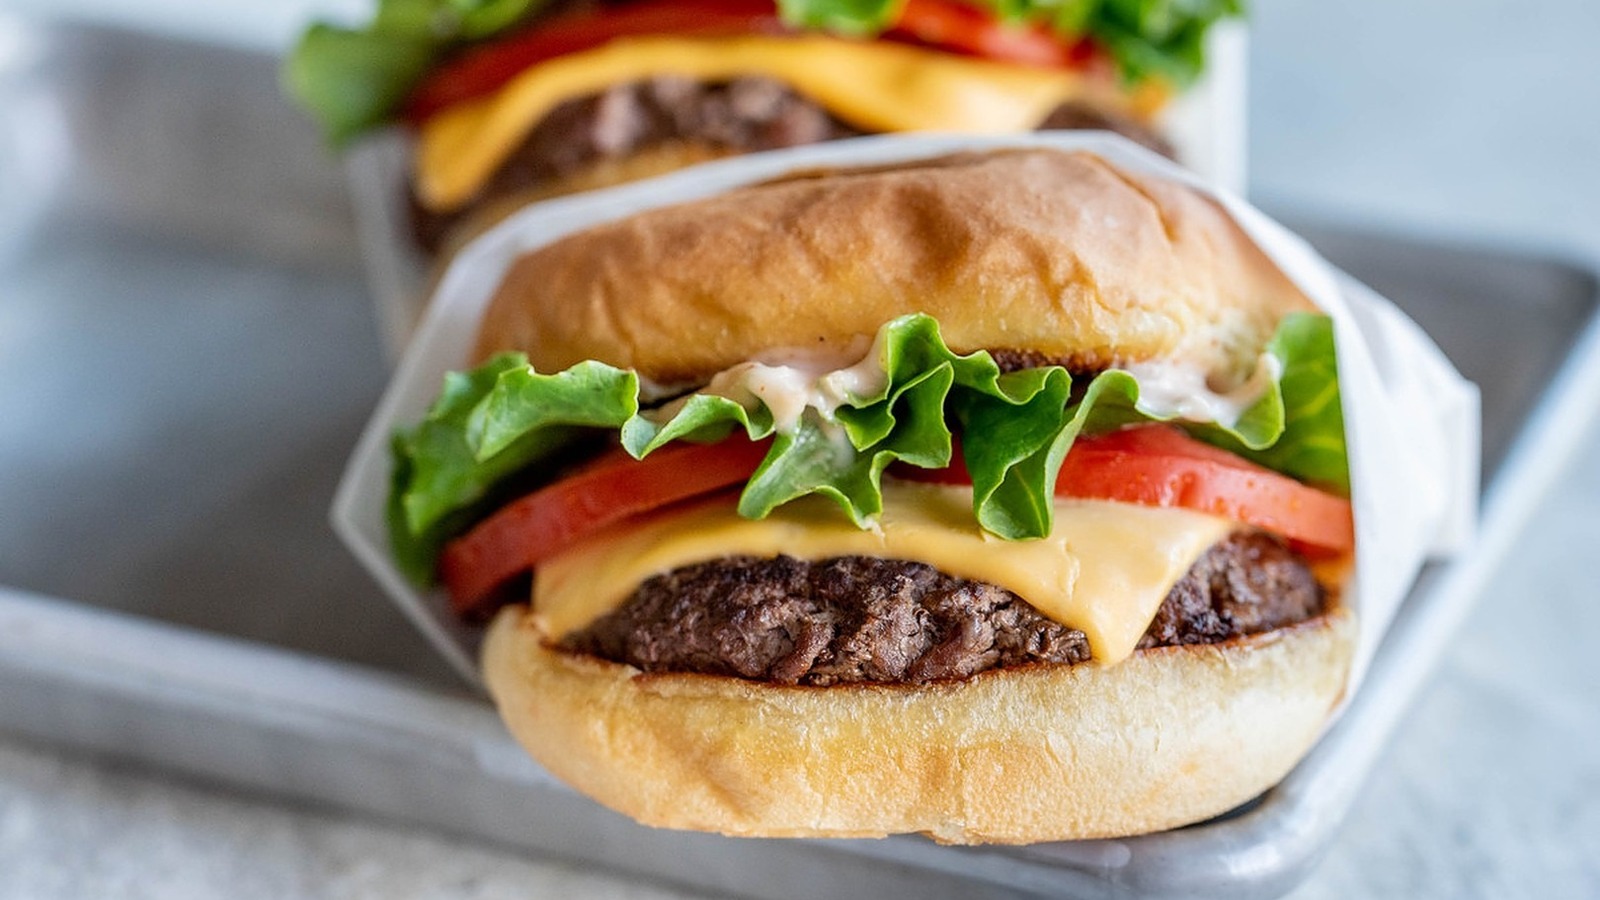 Homemade Smash Burgers Recipe